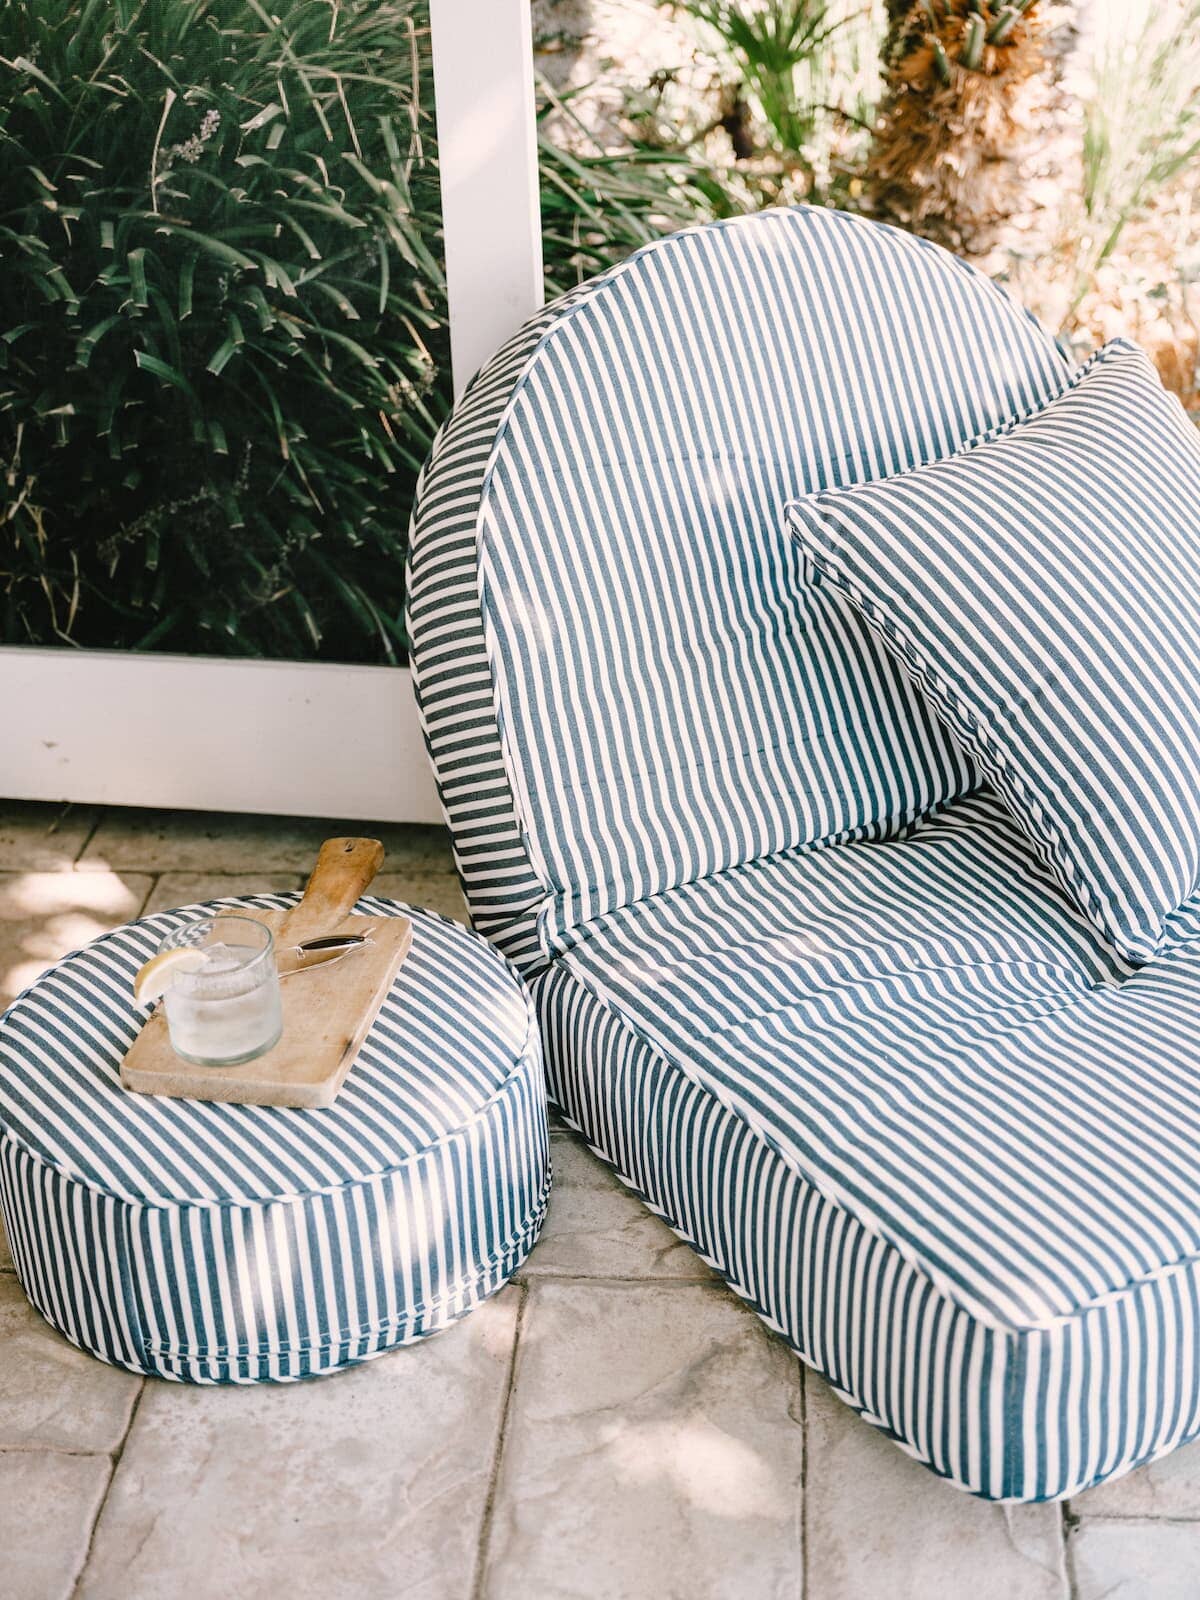 The Reclining Pillow Lounger - Lauren's Navy Stripe Reclining Pillow Lounger Business & Pleasure Co Aus 